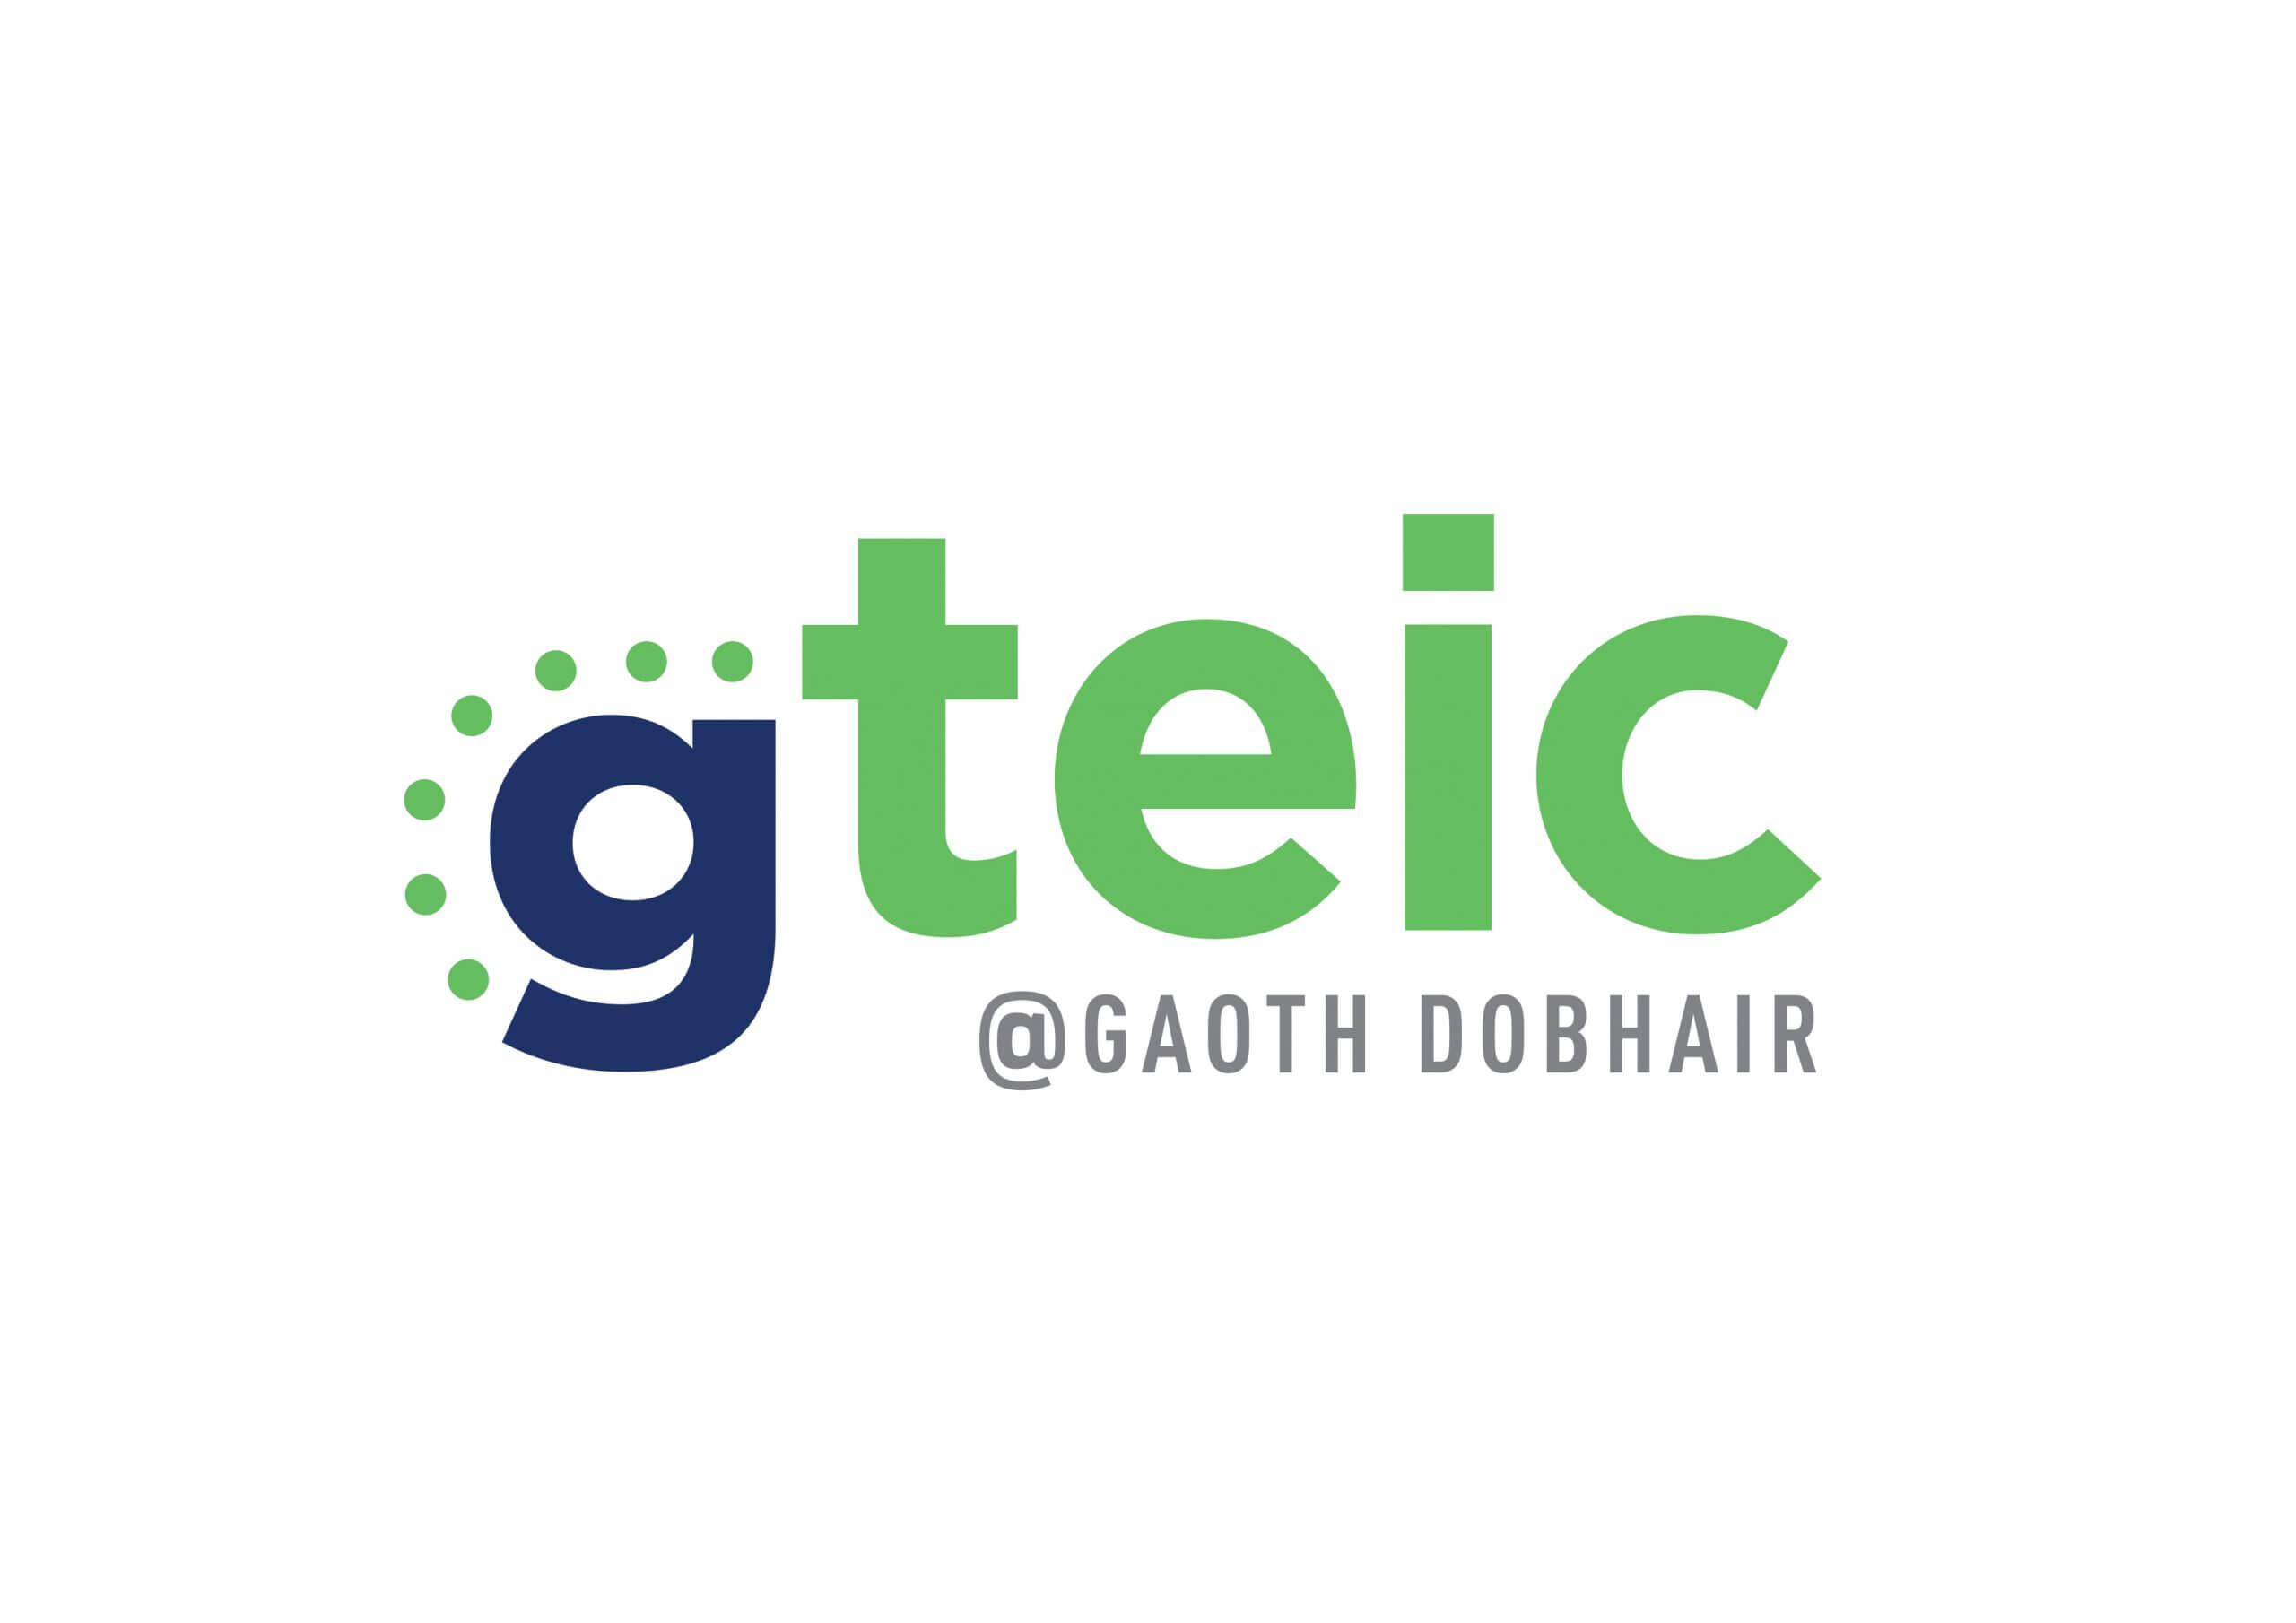 gteic@Gaoth Dobhair Digital Hub